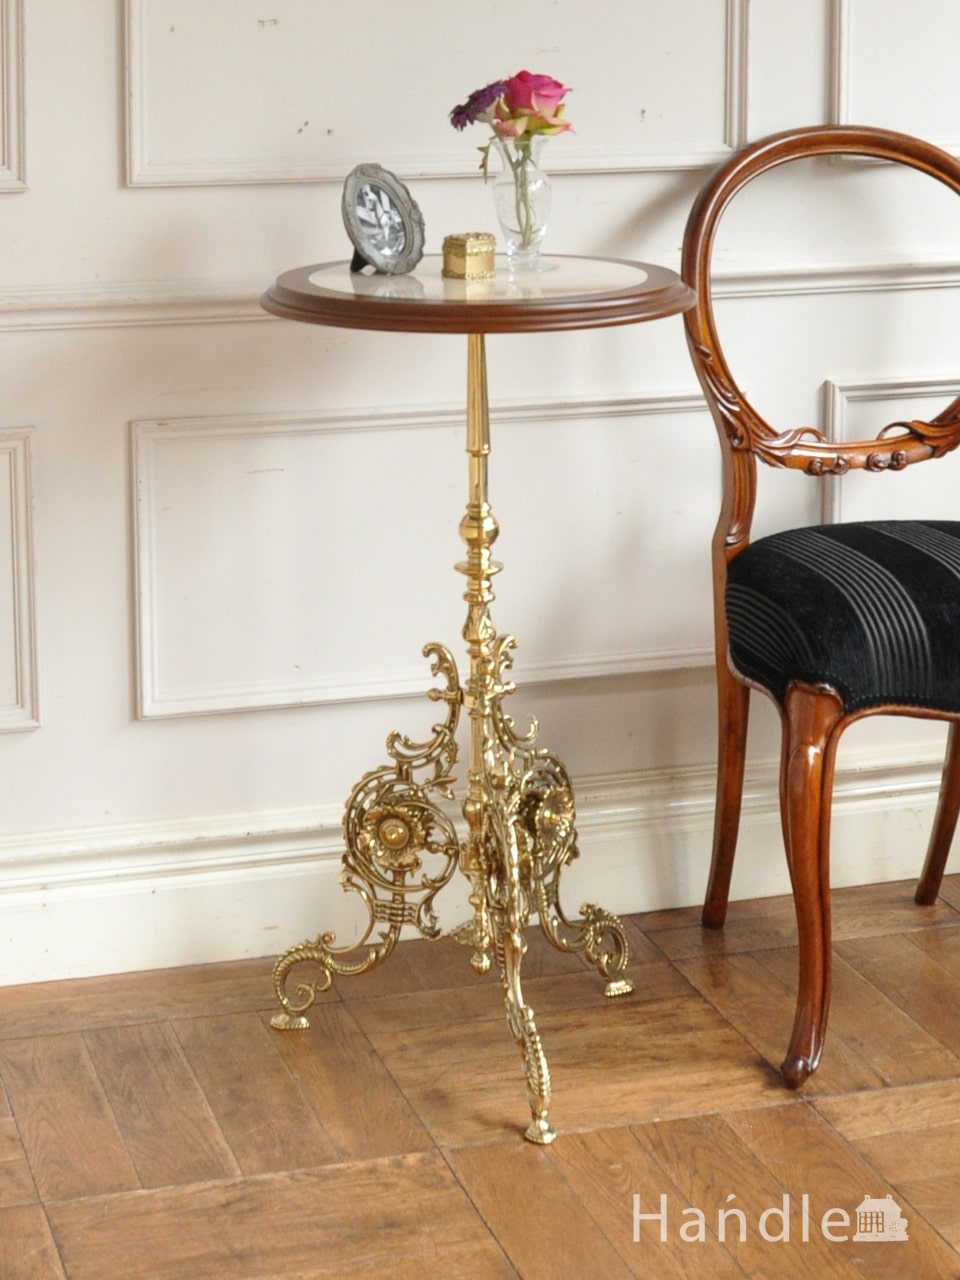 イタリアから届いたアンティーク調の家具、真鍮製の美しい足が